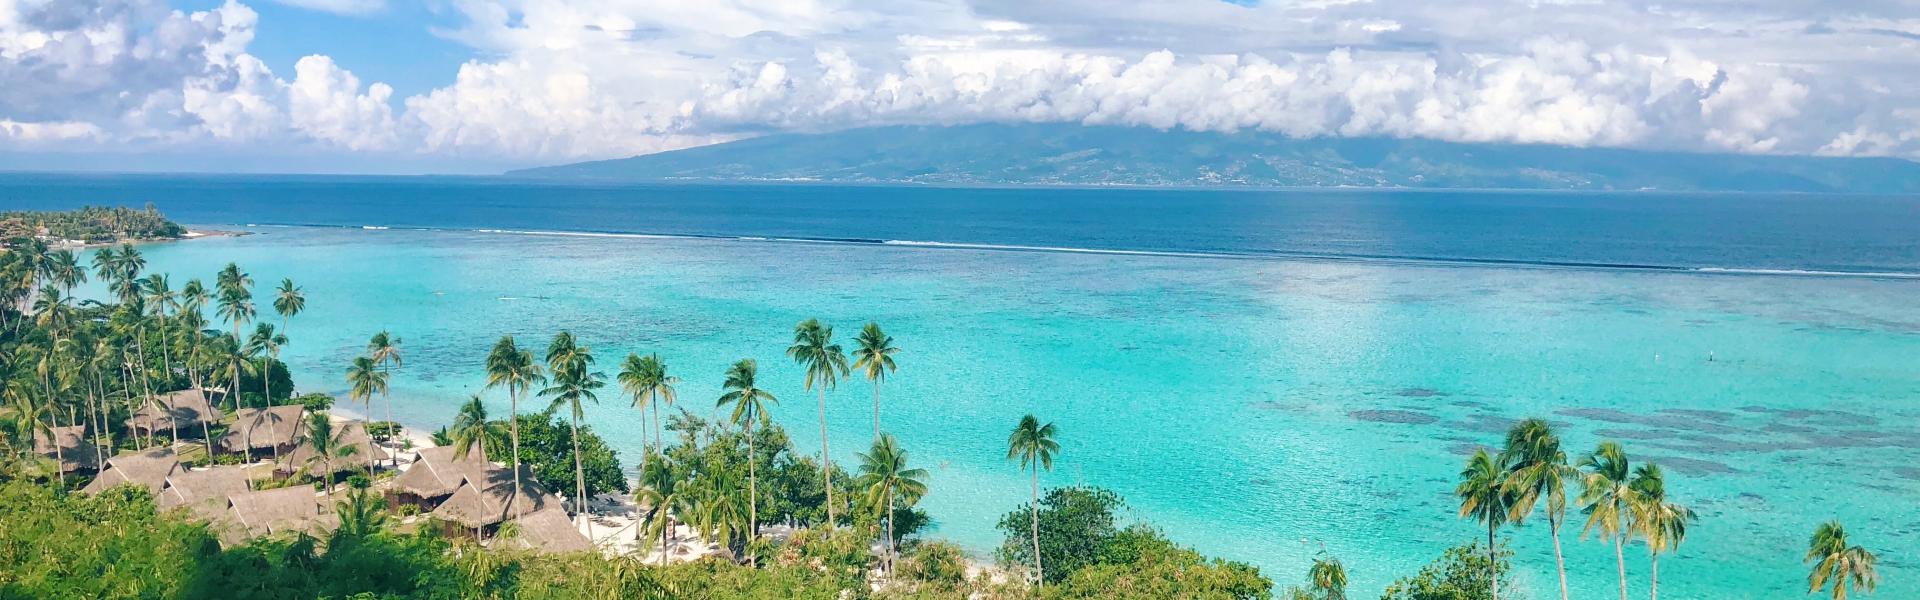 Tahiti Vacation Rentals - Wimdu